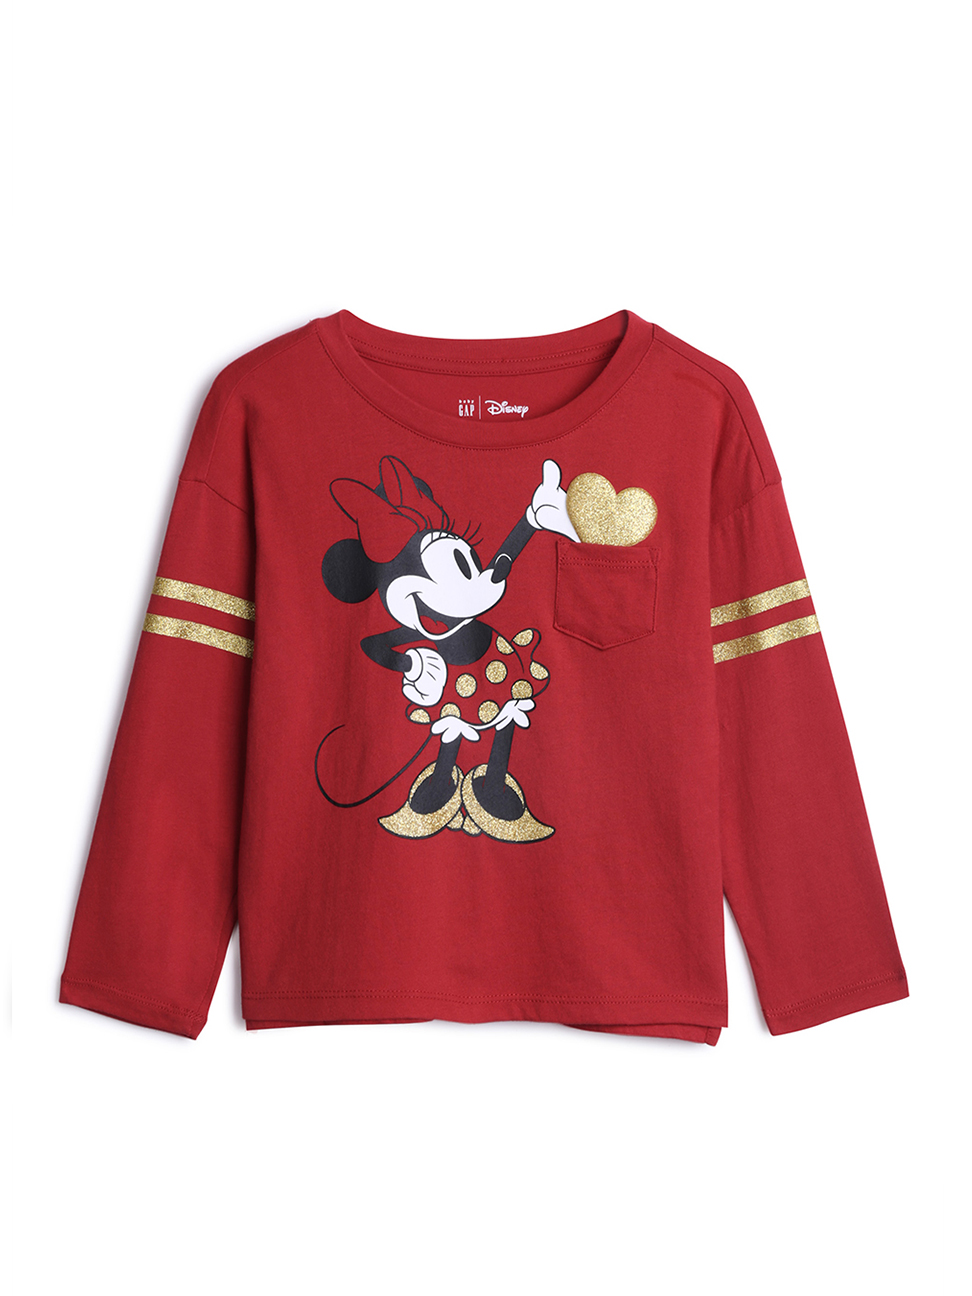 女幼童裝|Gap x Disney迪士尼聯名 米妮印花T恤-摩登紅色